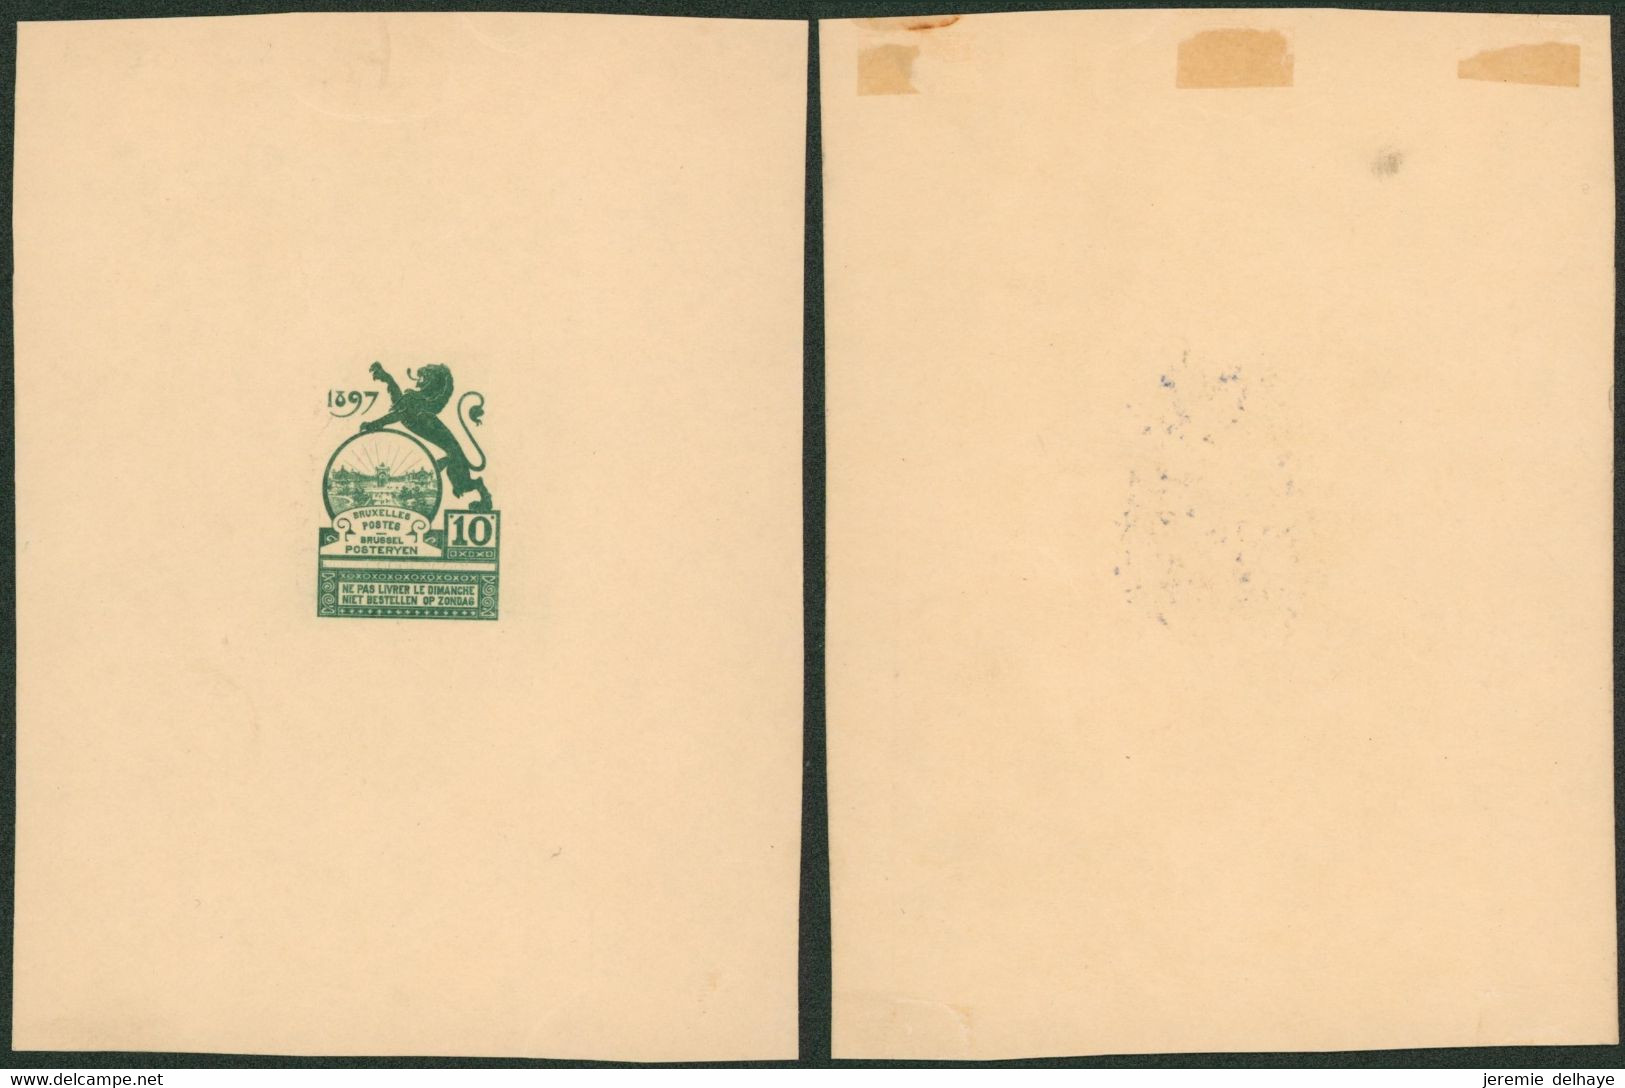 Essai - Proposition Du Peintre Louis Titz (Bruxelles Expositions 1897) Sur Papier Carton Crème (1 Couleur) : STES 2221 - Essais & Réimpressions